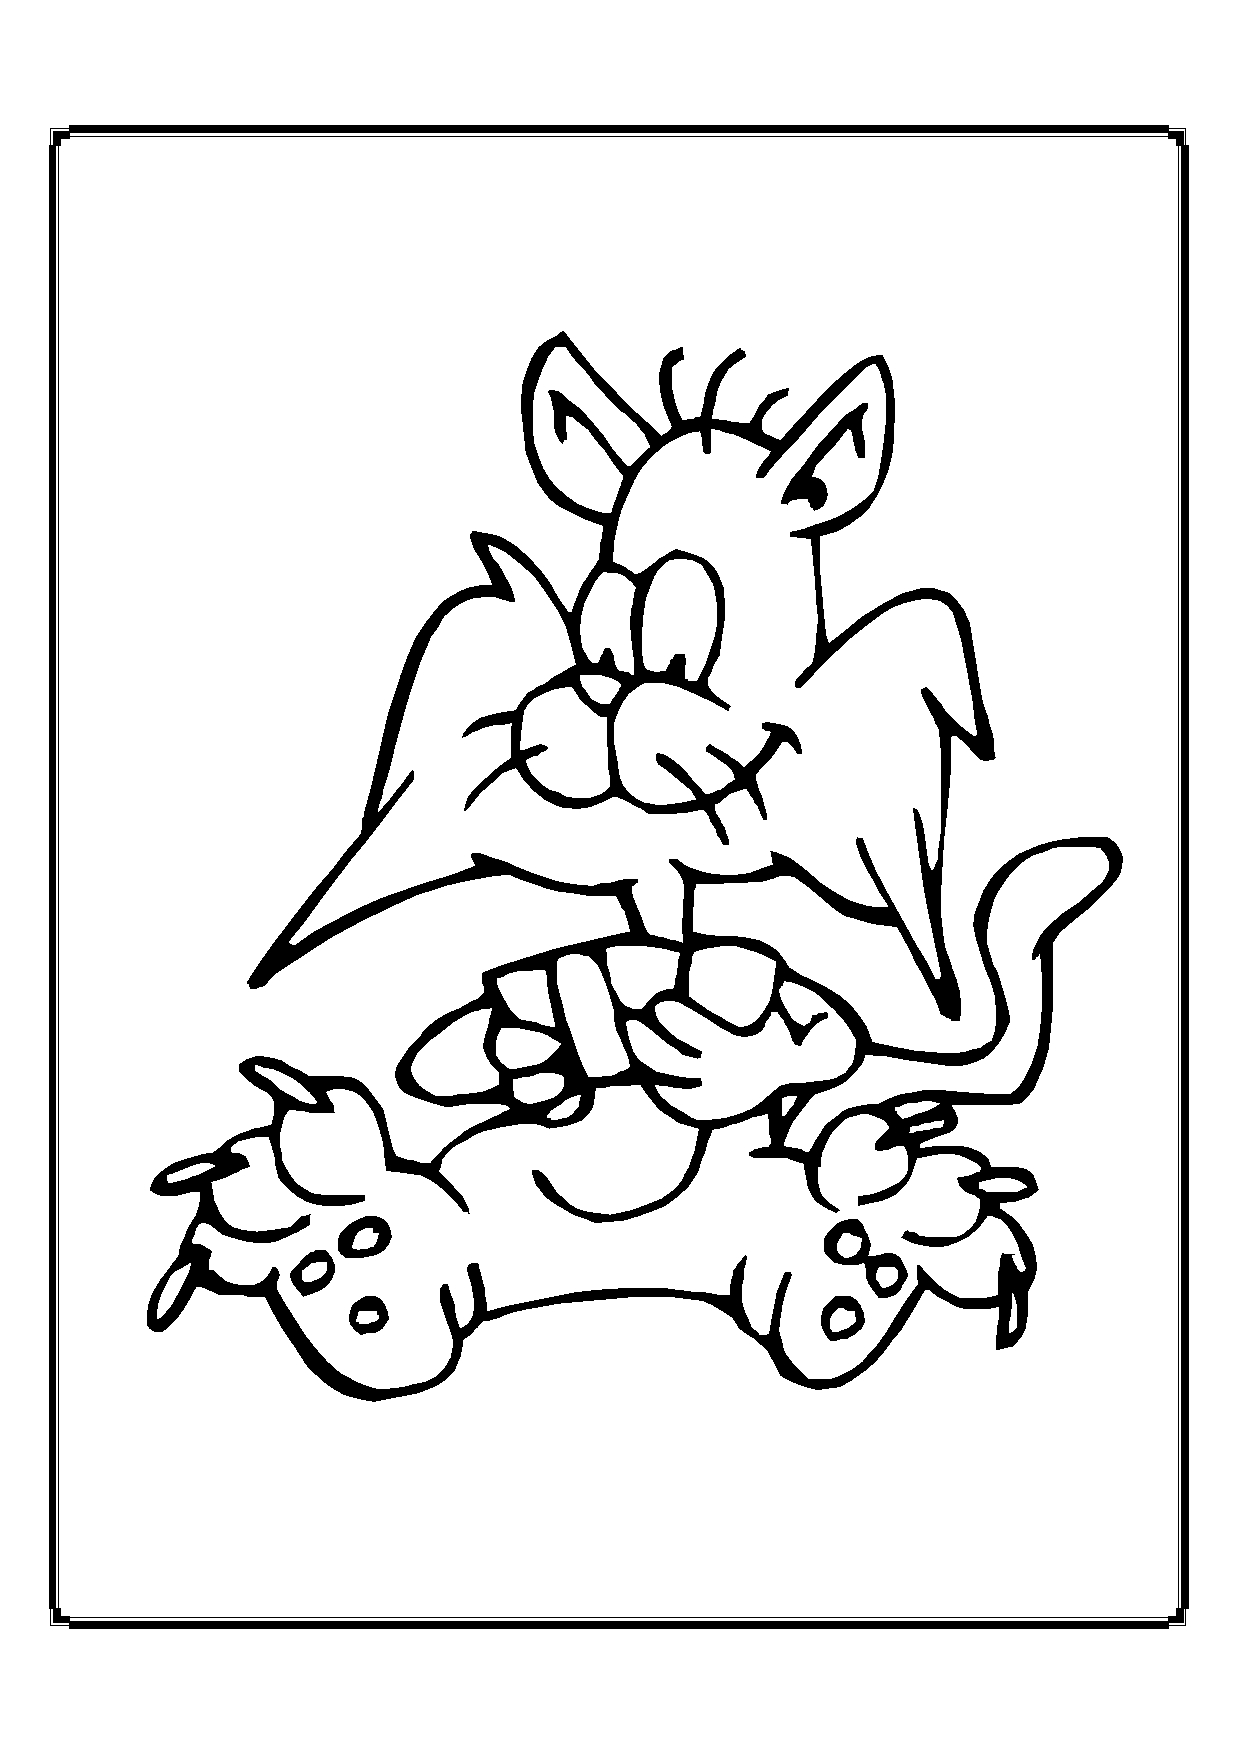 Kolorowanka kot leży wygodnie z rozłożonymi nogami i szeroką brodą trzymając cztery karty w rękach